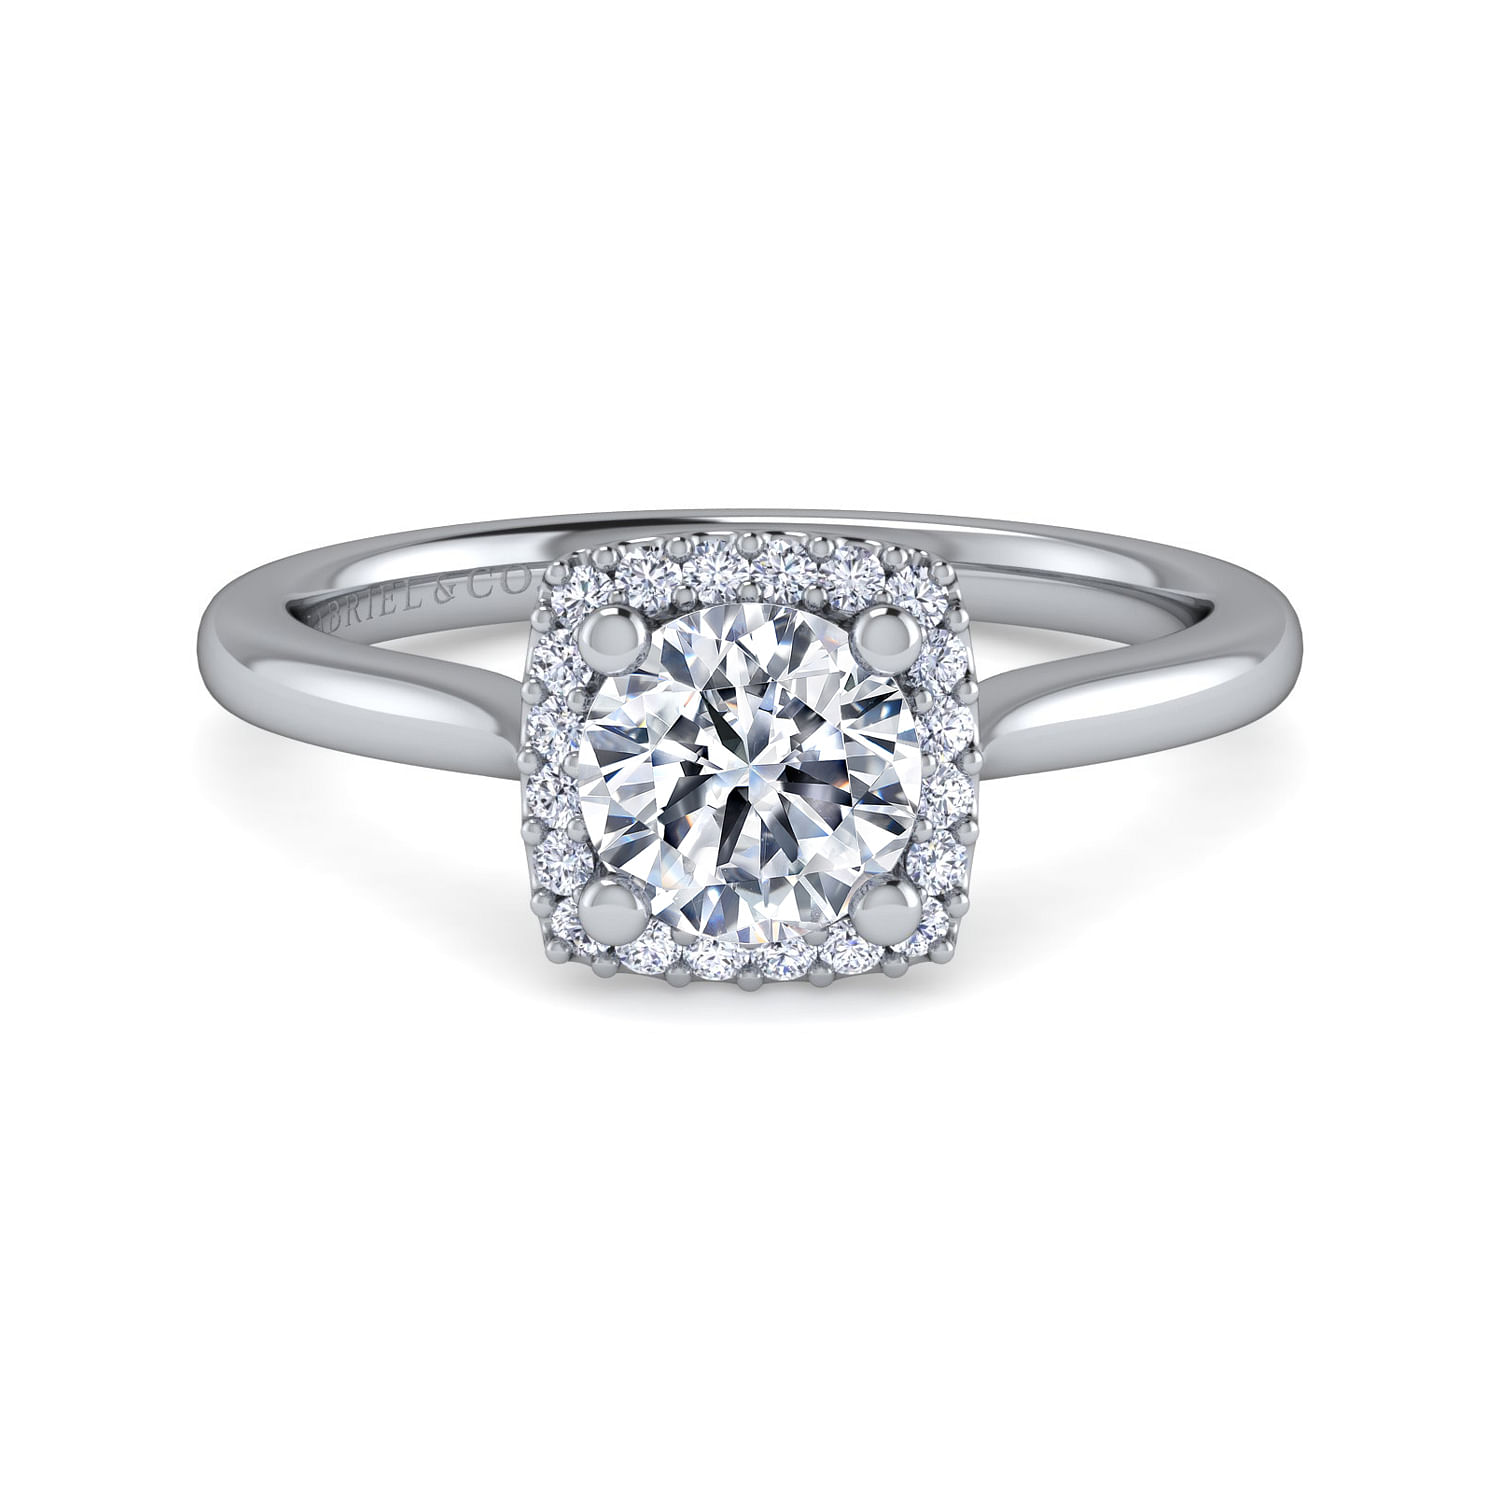 Jenna - 14K White Gold Round Halo Diamond Engagement Ring